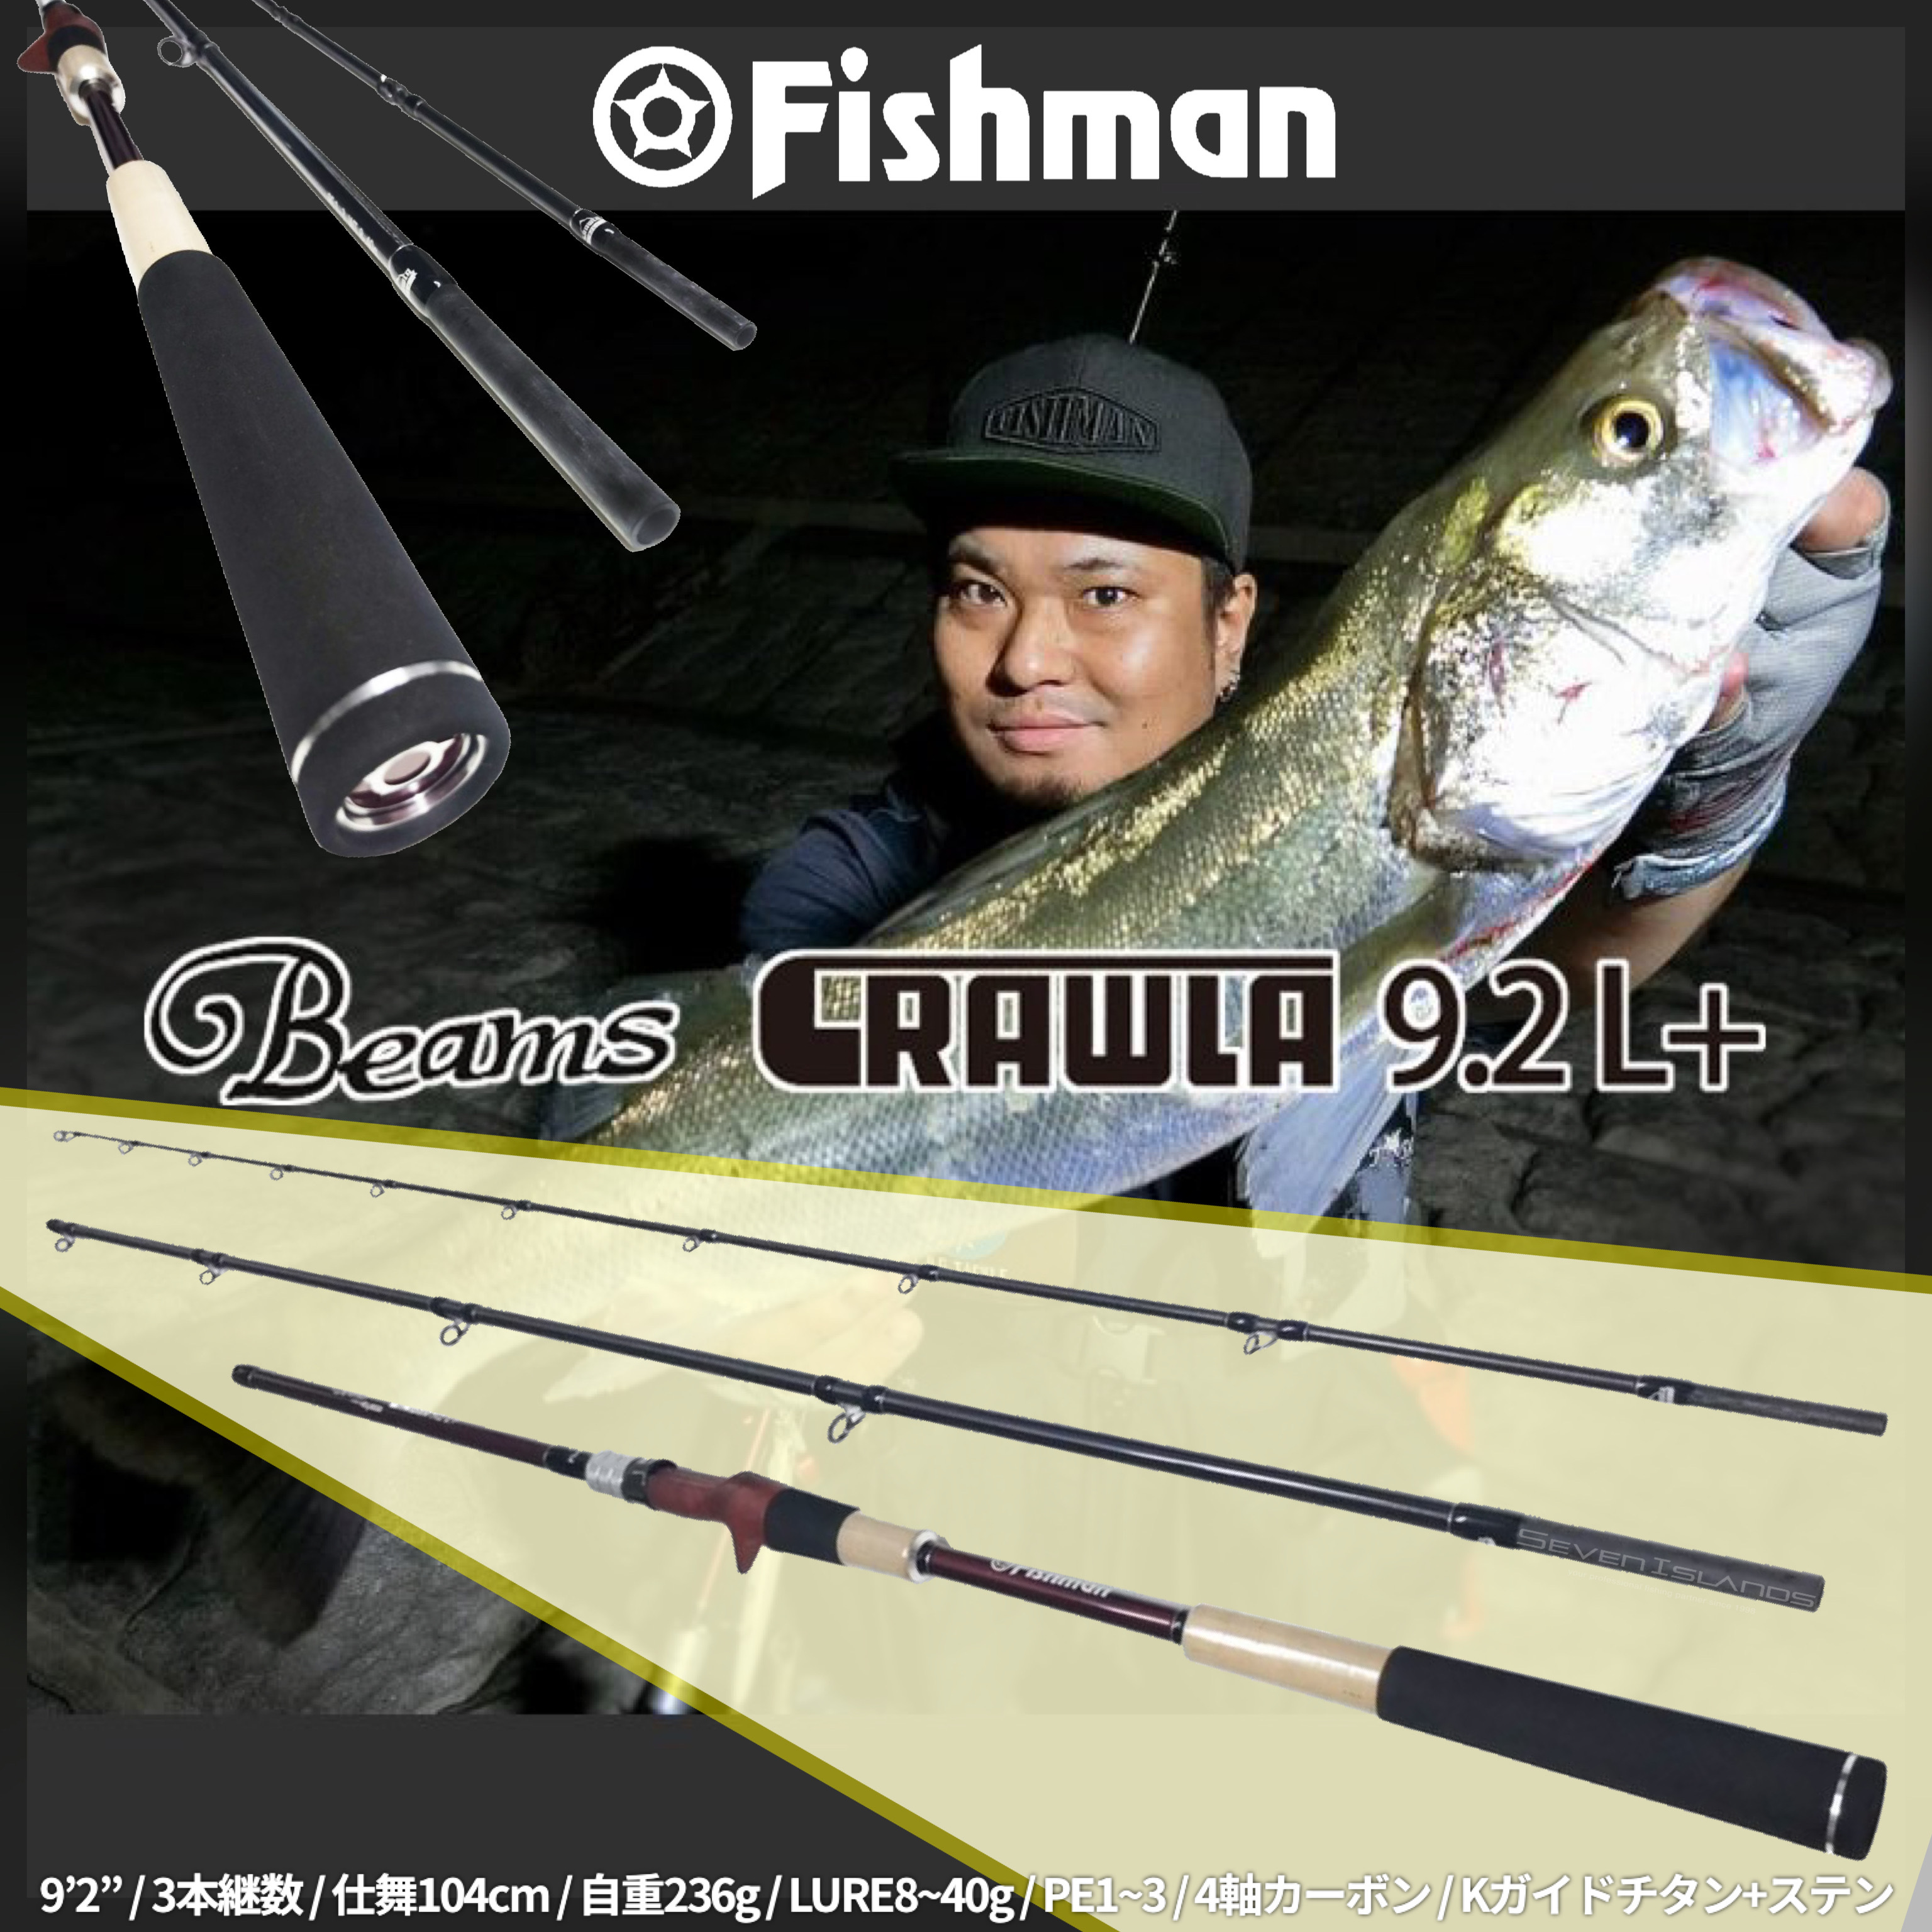 Fishman Beams CRAWLA 9.2L+ご購入よろしくお願い致します